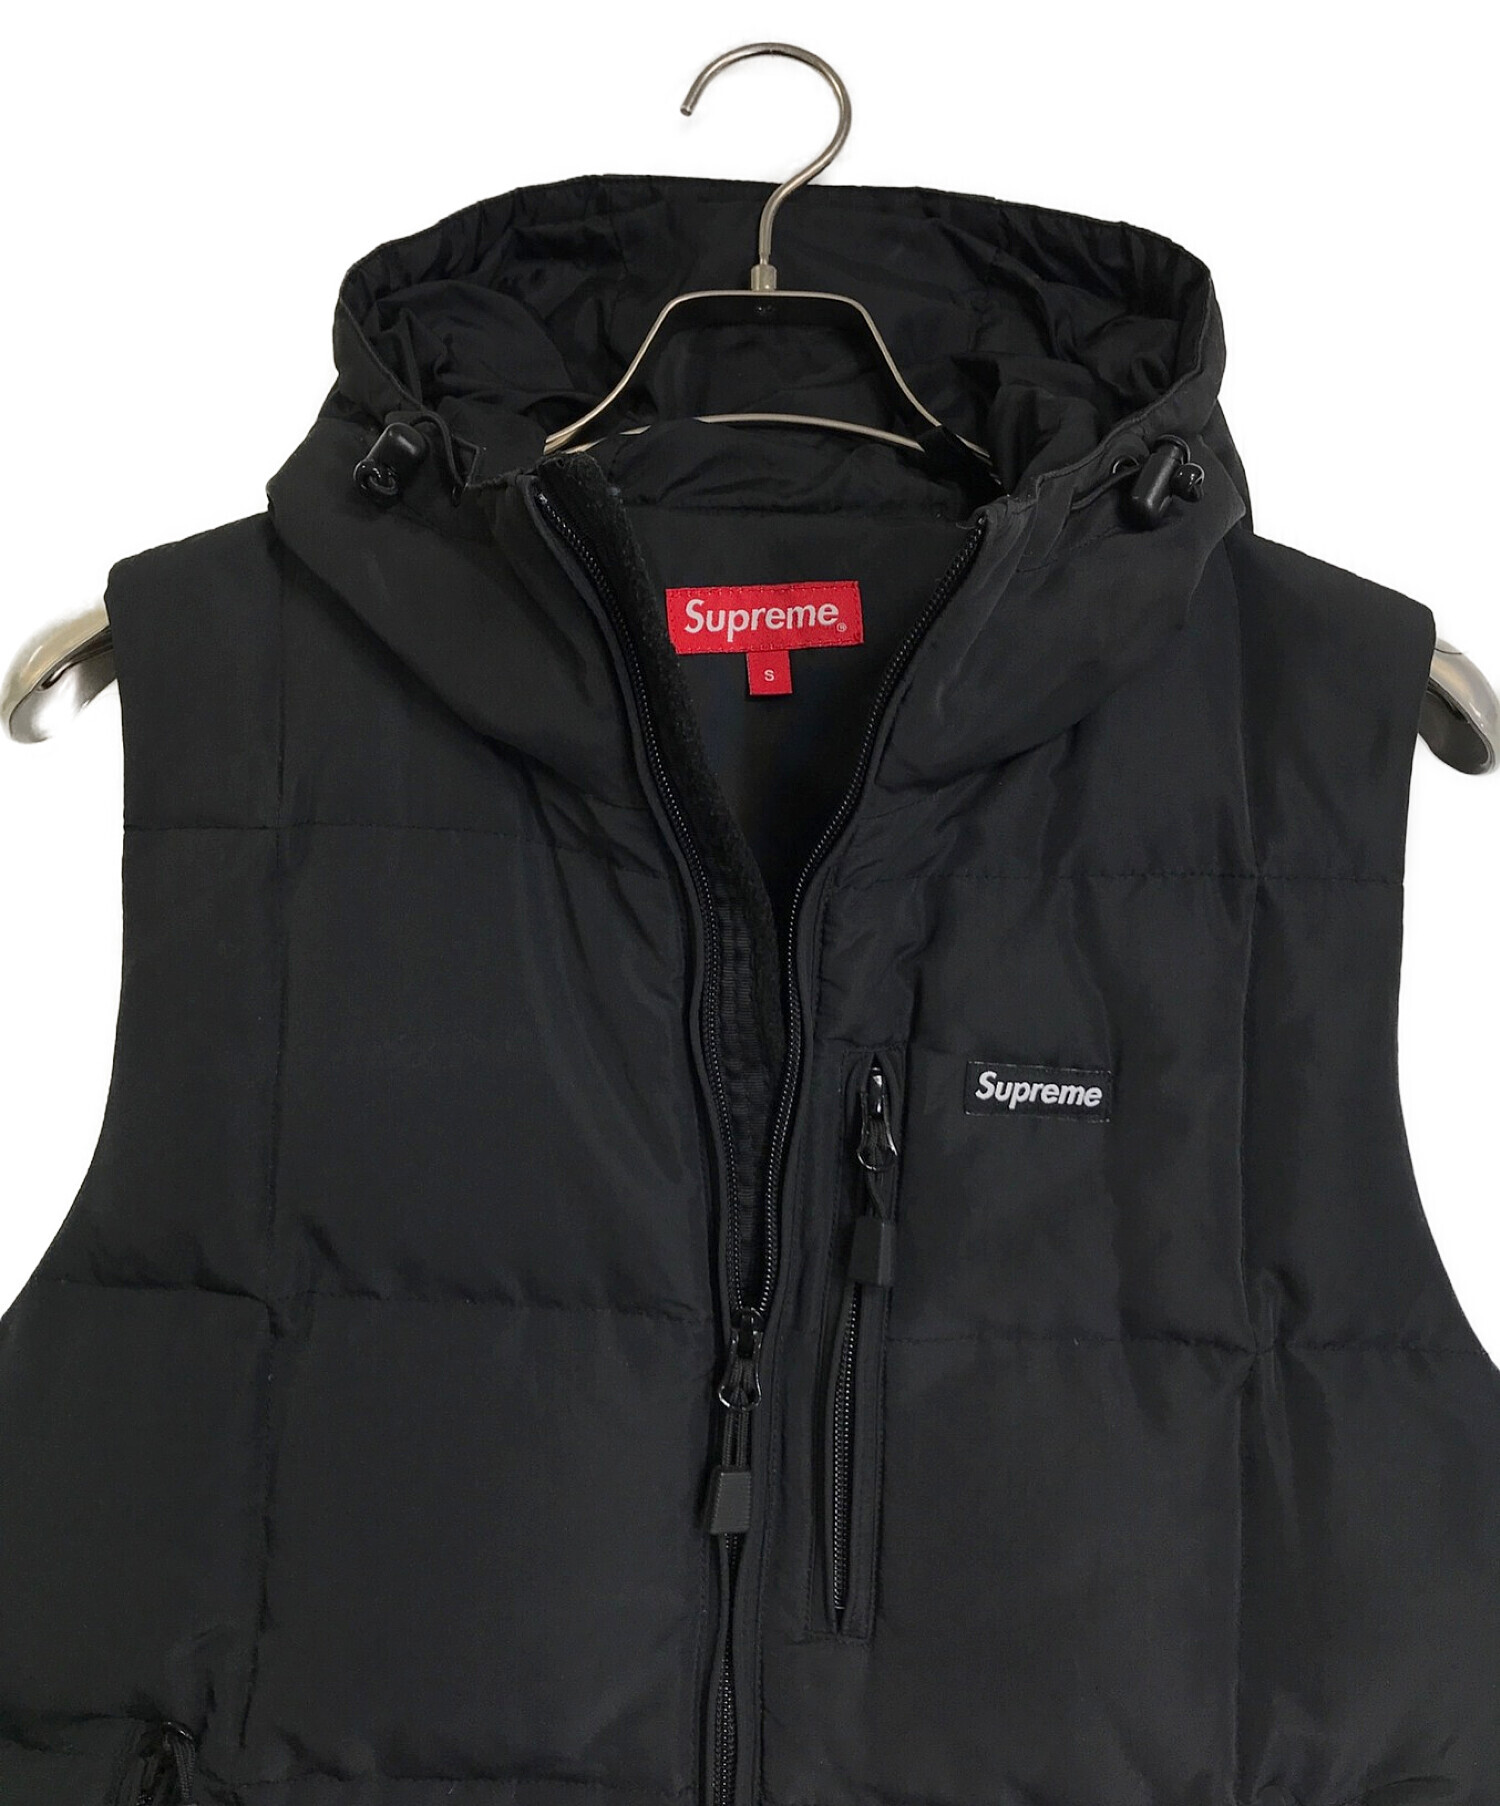 SUPREME (シュプリーム) 14AW Iridescent Puffy Vest ブラック サイズ:S